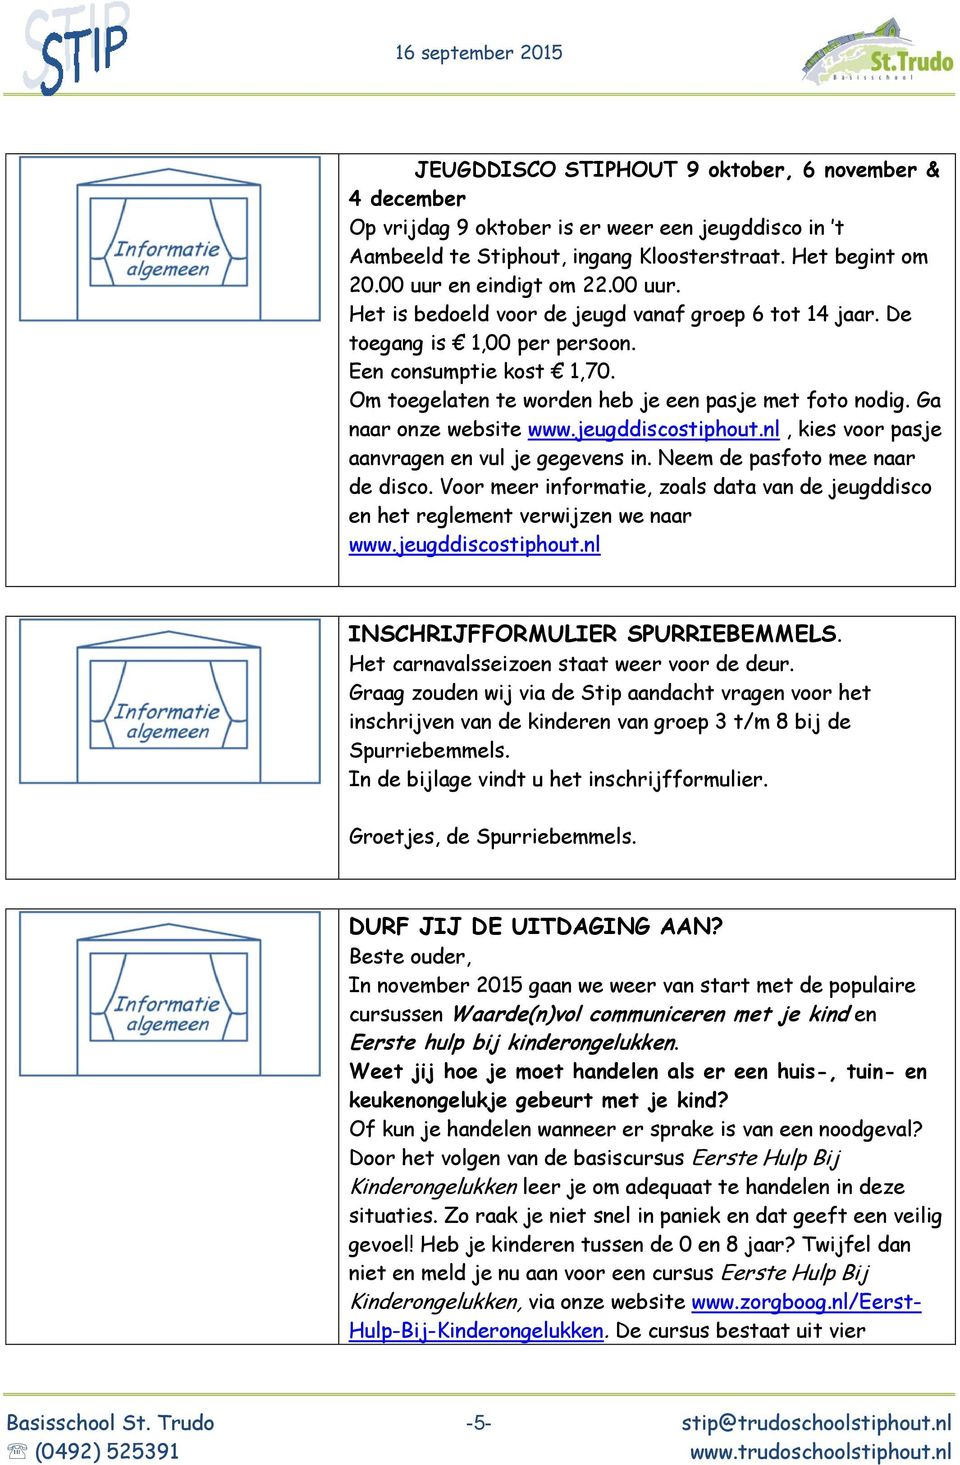 Ga naar onze website www.jeugddiscostiphout.nl, kies voor pasje aanvragen en vul je gegevens in. Neem de pasfoto mee naar de disco.